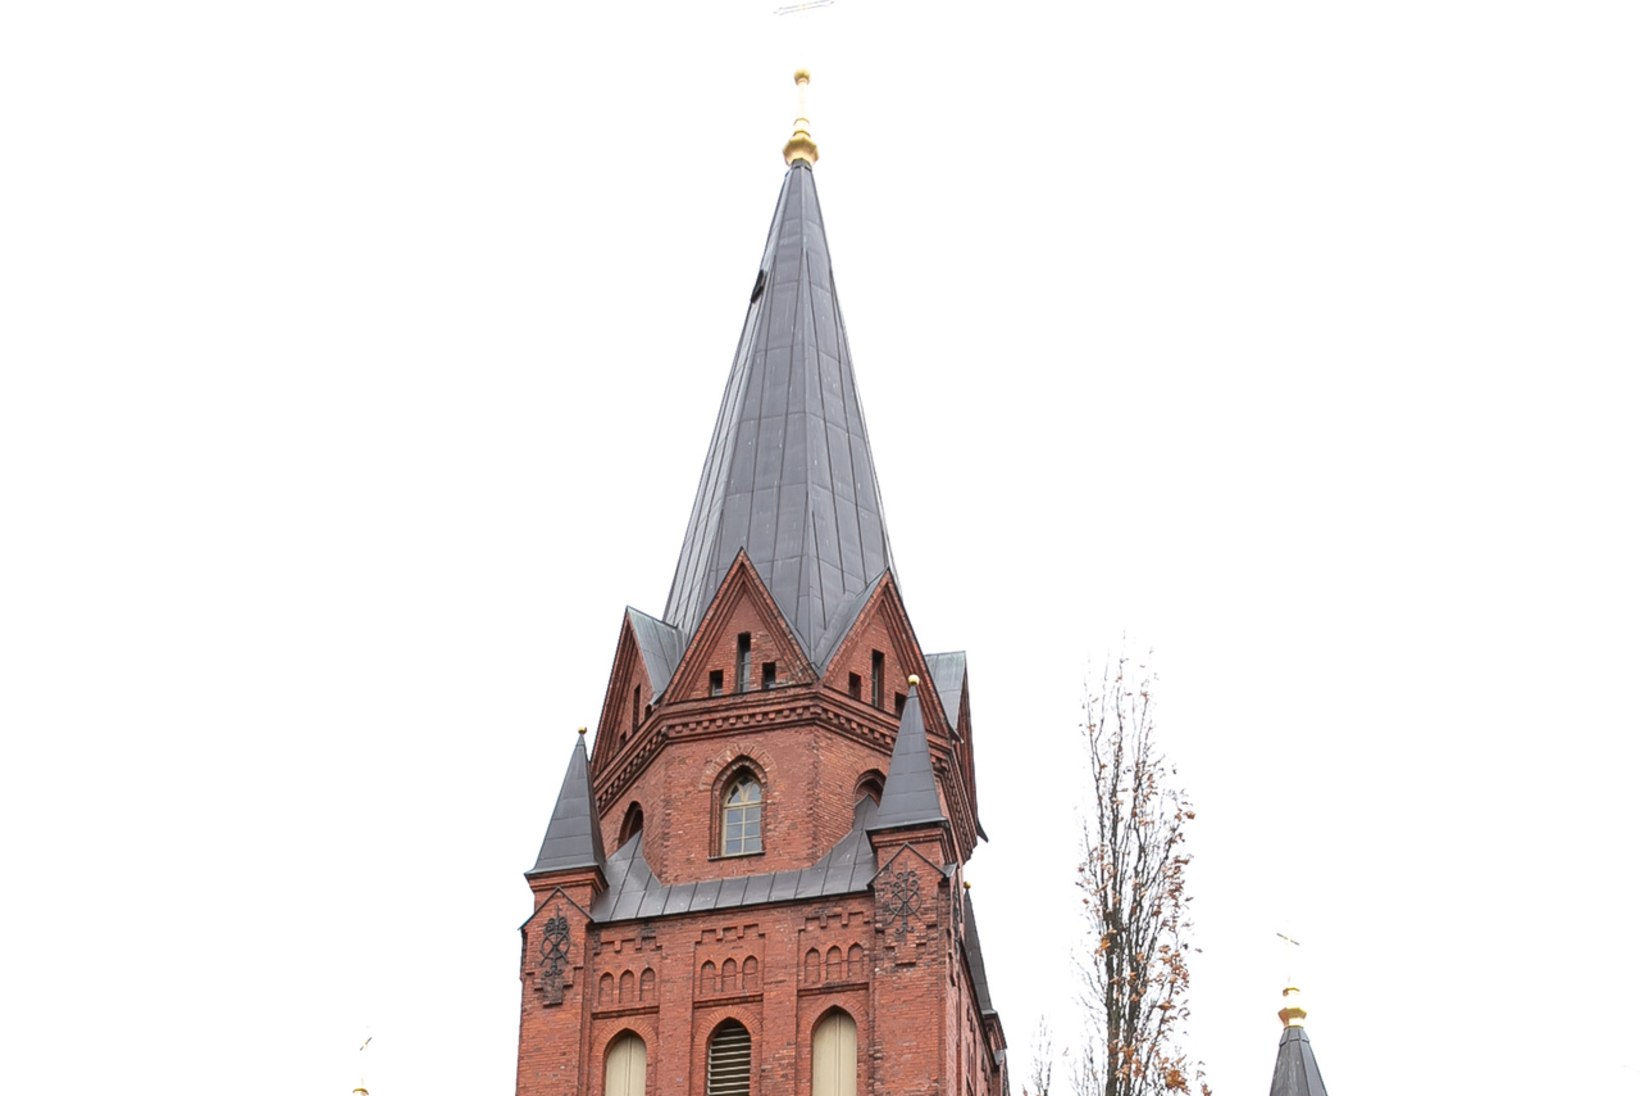 EESTLUSE KANTS: Tartu Peetri kirik 135